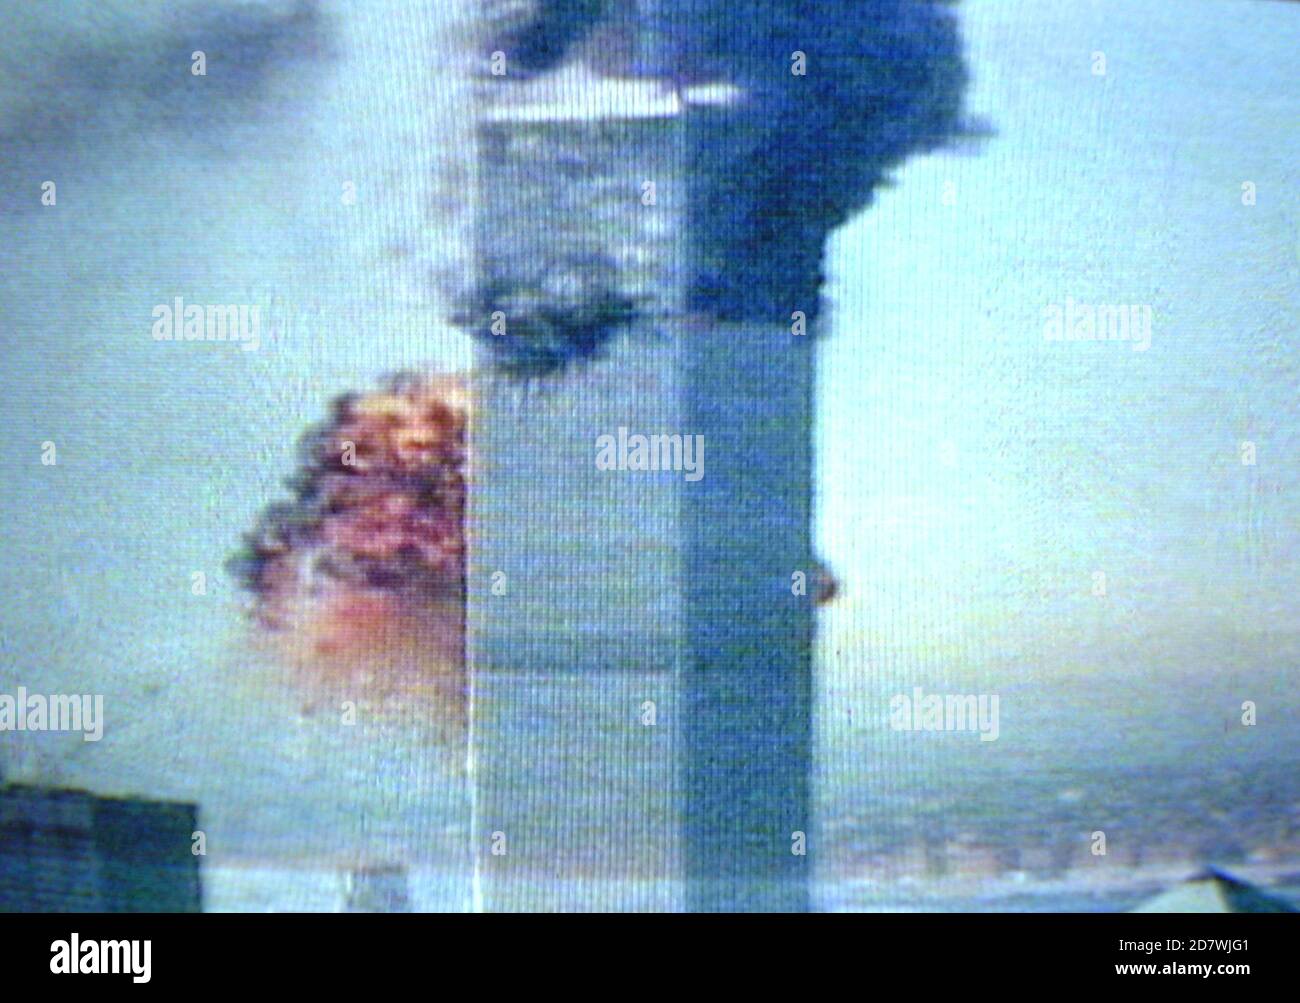 AJAXNETPHOTO. SEPTEMBER 2001. MANHATTAN, NEW YORK CITY, USA - 9/11 MOMENT DES AUFPRALLS. - TV NEWS LIVE-ÜBERTRAGUNG BILDSCHIRM GRAB DES AUGENBLICKS UNITED AIRLINES FLUG 175 SCHLUG IN DEN SÜDTURM DES WELTHANDELSZENTRUMS, WIE VON MILLIONEN VON T.V. GESEHEN BEOBACHTER DES SCHLIMMSTEN TERRORANSCHLAGS AUF AMERIKANISCHEN BODEN. DER WTC NORTH TOWER BRENNT BEREITS HÖHER ALS DIE FRÜHEREN AUSWIRKUNGEN DES FLUGS 11 DER AMERIKANISCHEN FLUGGESELLSCHAFTEN. BEIDE TÜRME WURDEN BEI DEM ANGRIFF ZERSTÖRT. FOTO: JONATHAN EASTLAND/AJAX REF: D011109 15 Stockfoto